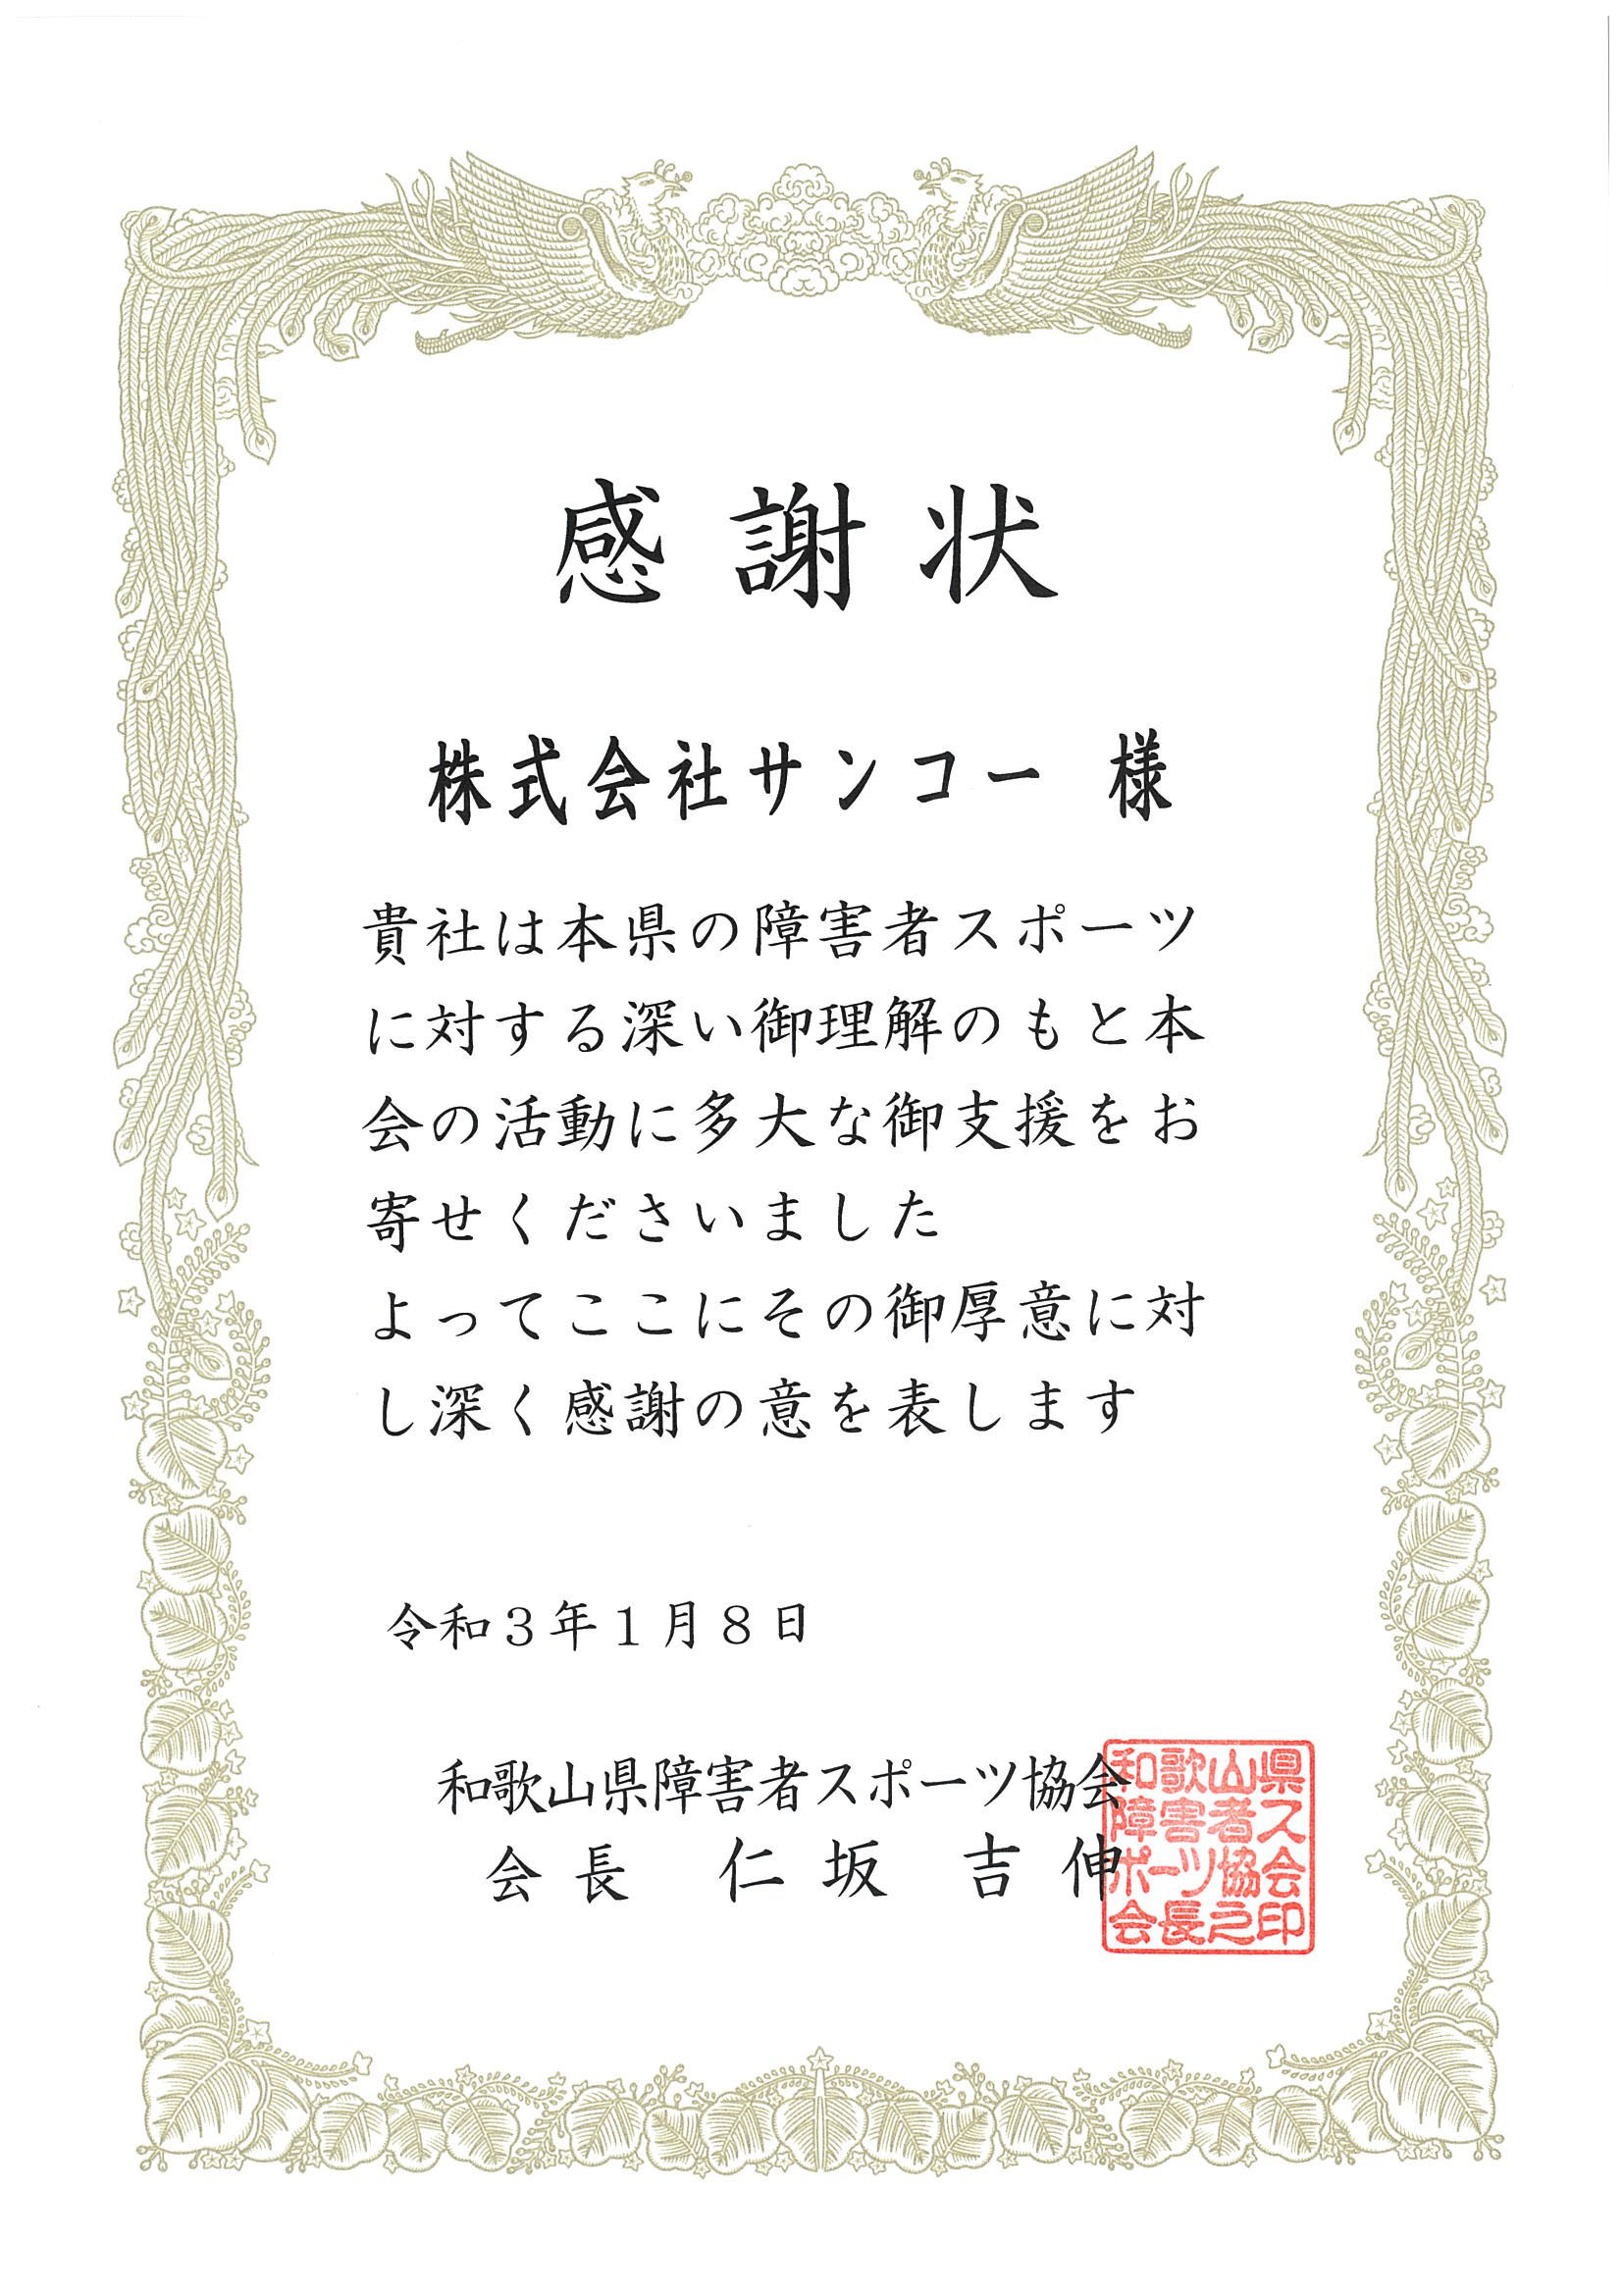 和歌山県障害者スポーツ協会から感謝状をいただきました 。